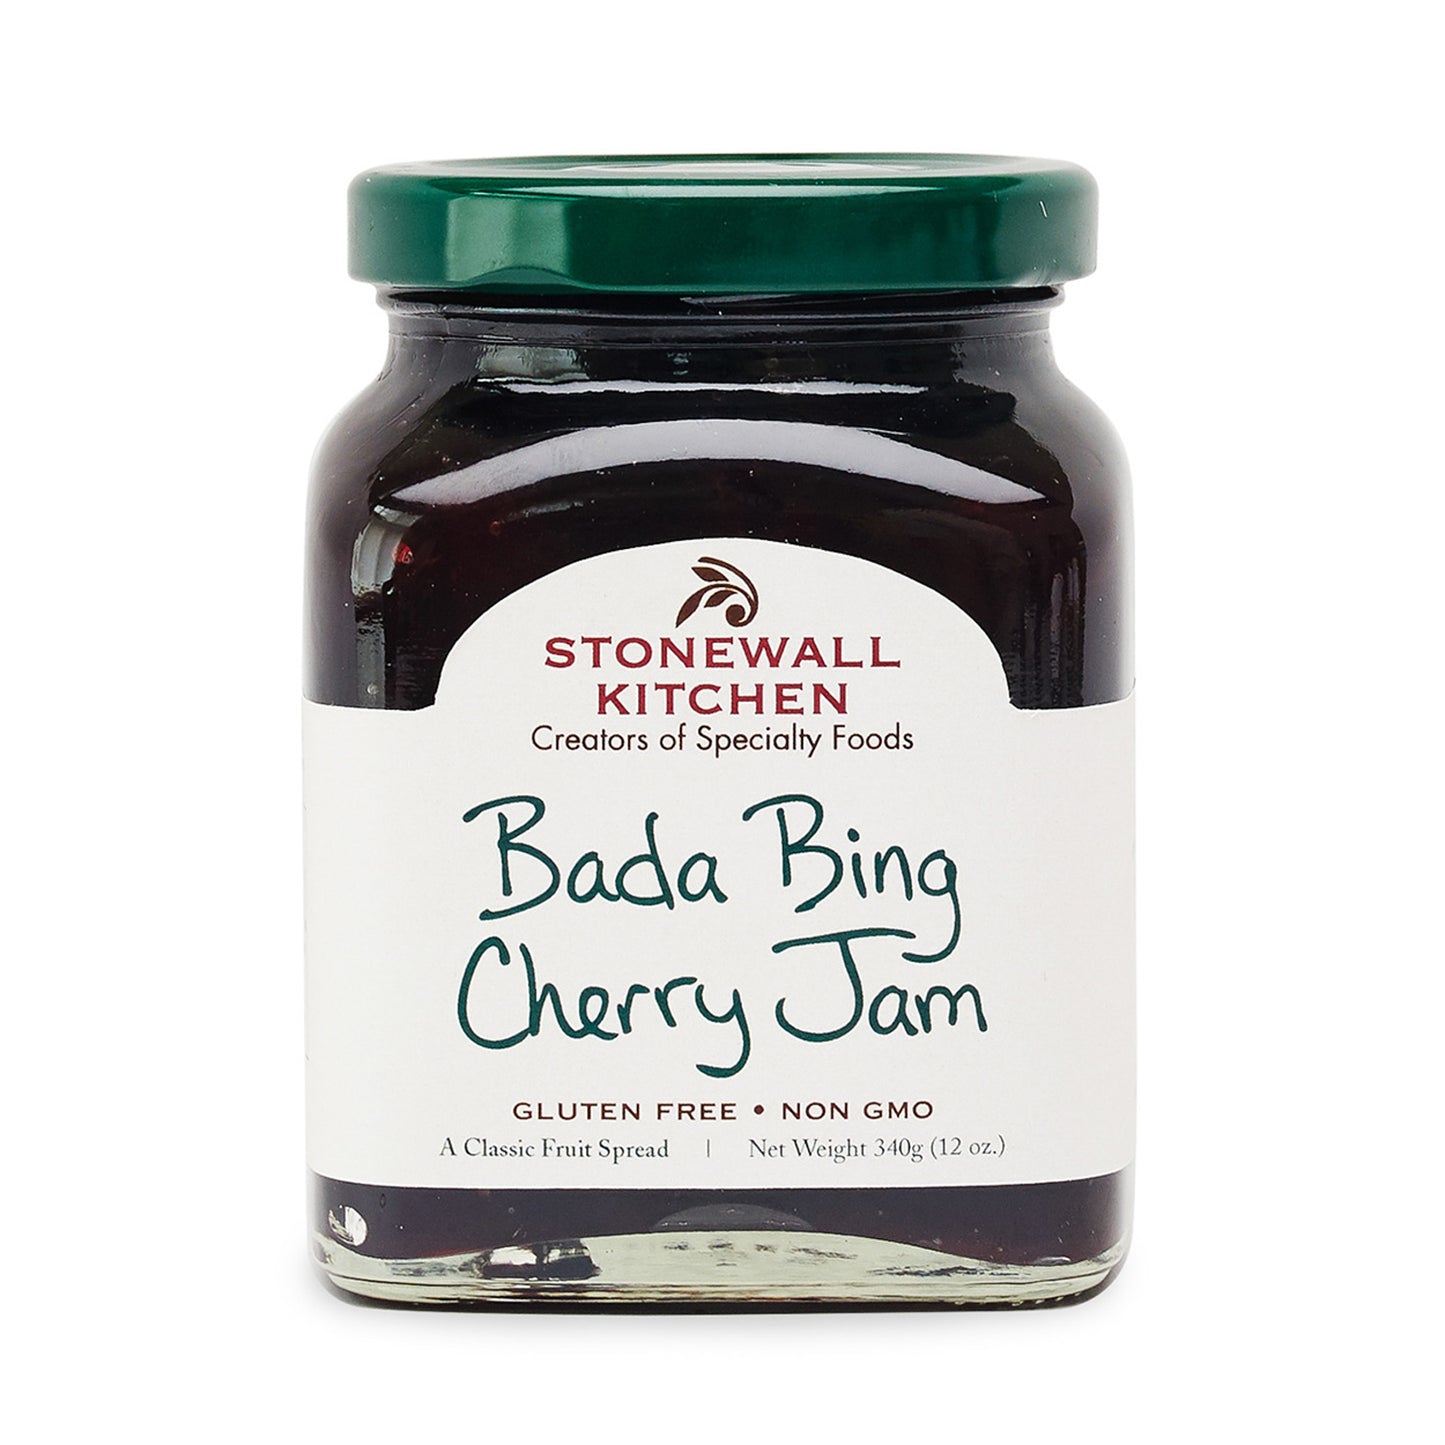 Bada Bing Cherry Jam